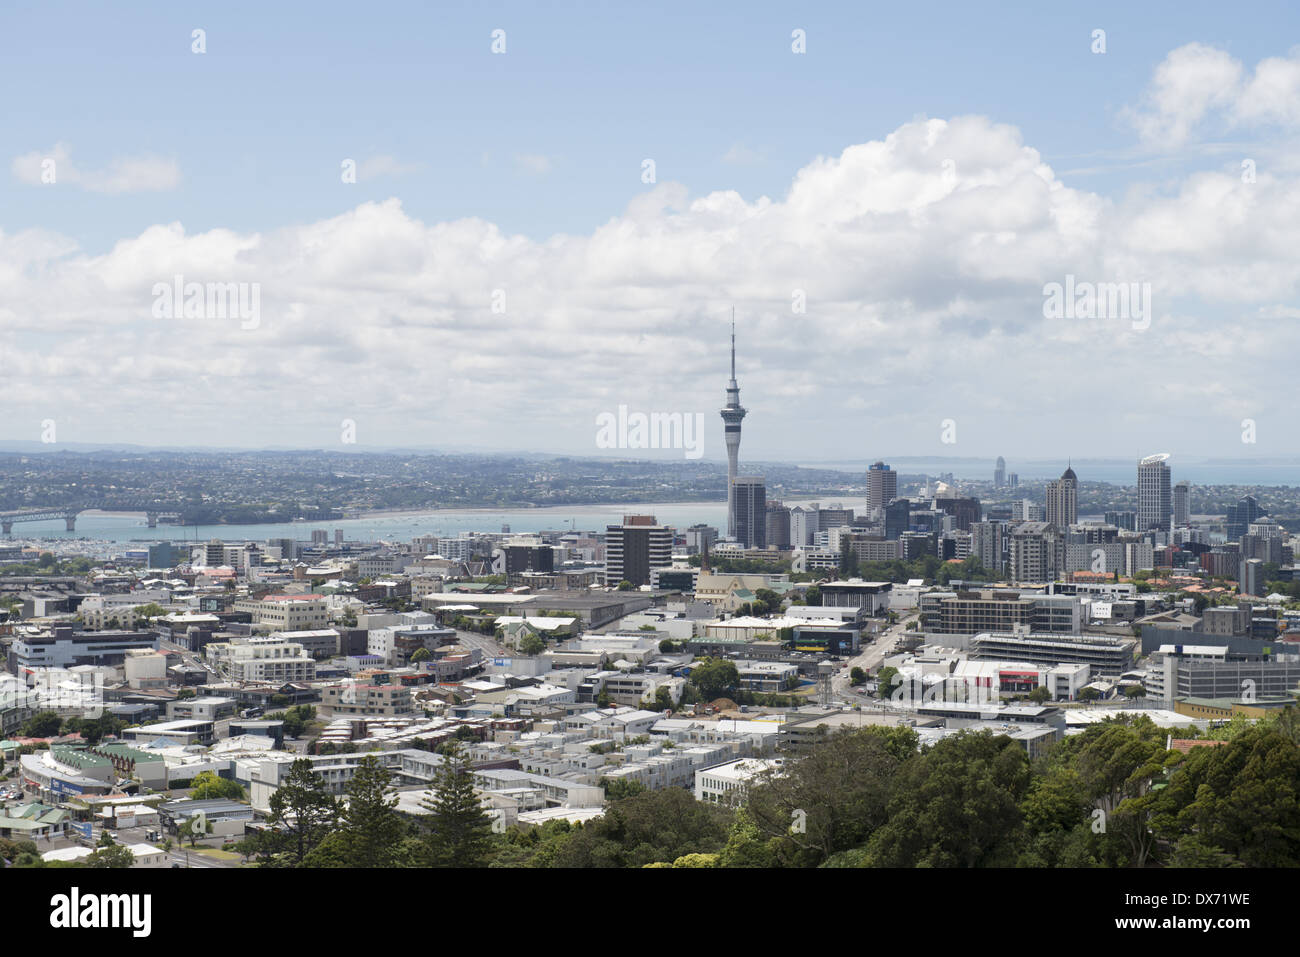 Vista de la ciudad de Mt Eden, que es el volcán más alto de Auckland, a 196m. Foto de stock